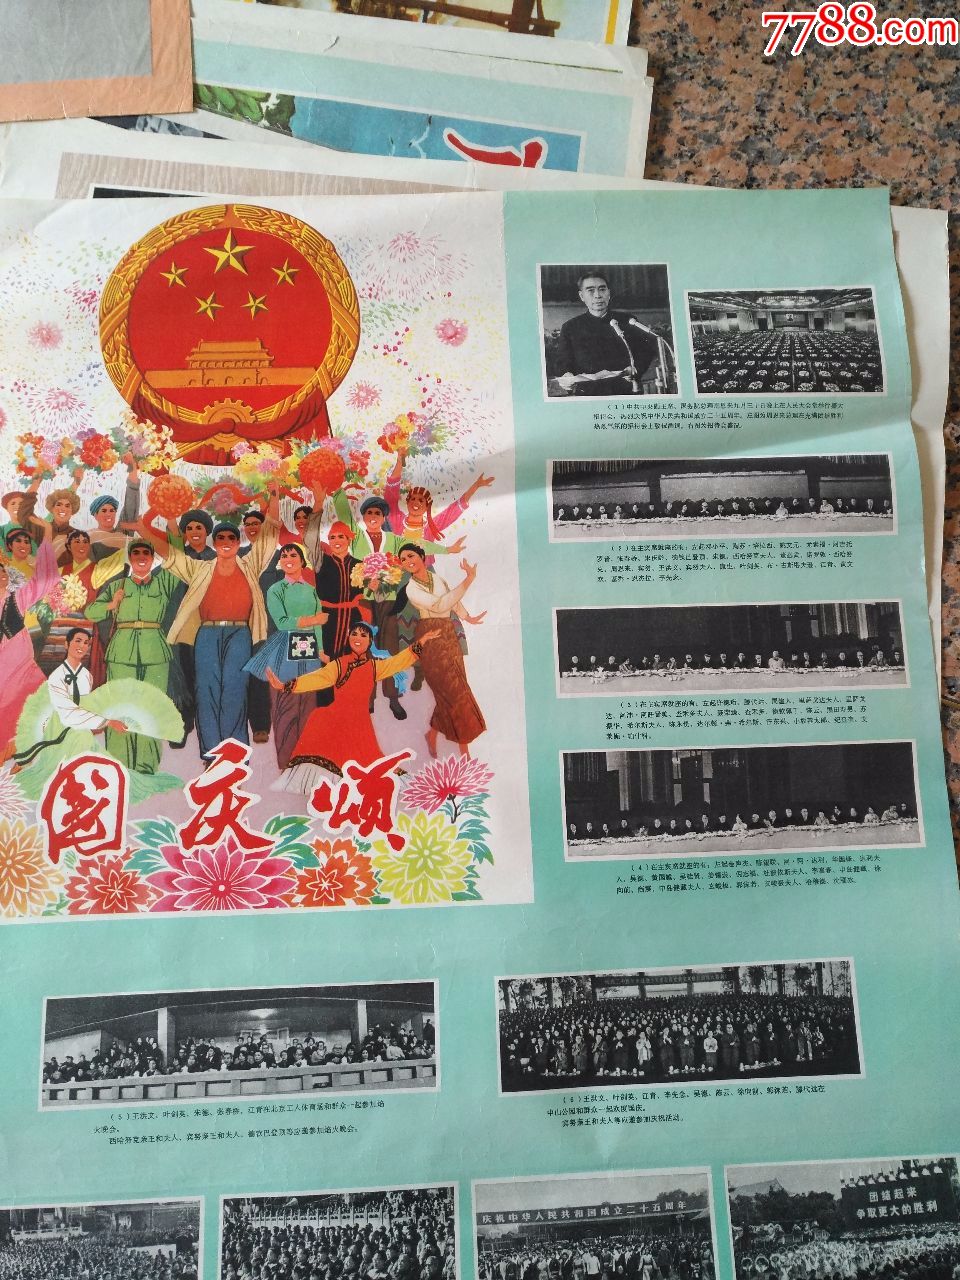 文革电影宣传画2-81,国庆颂,中国新闻电影制品厂,规格